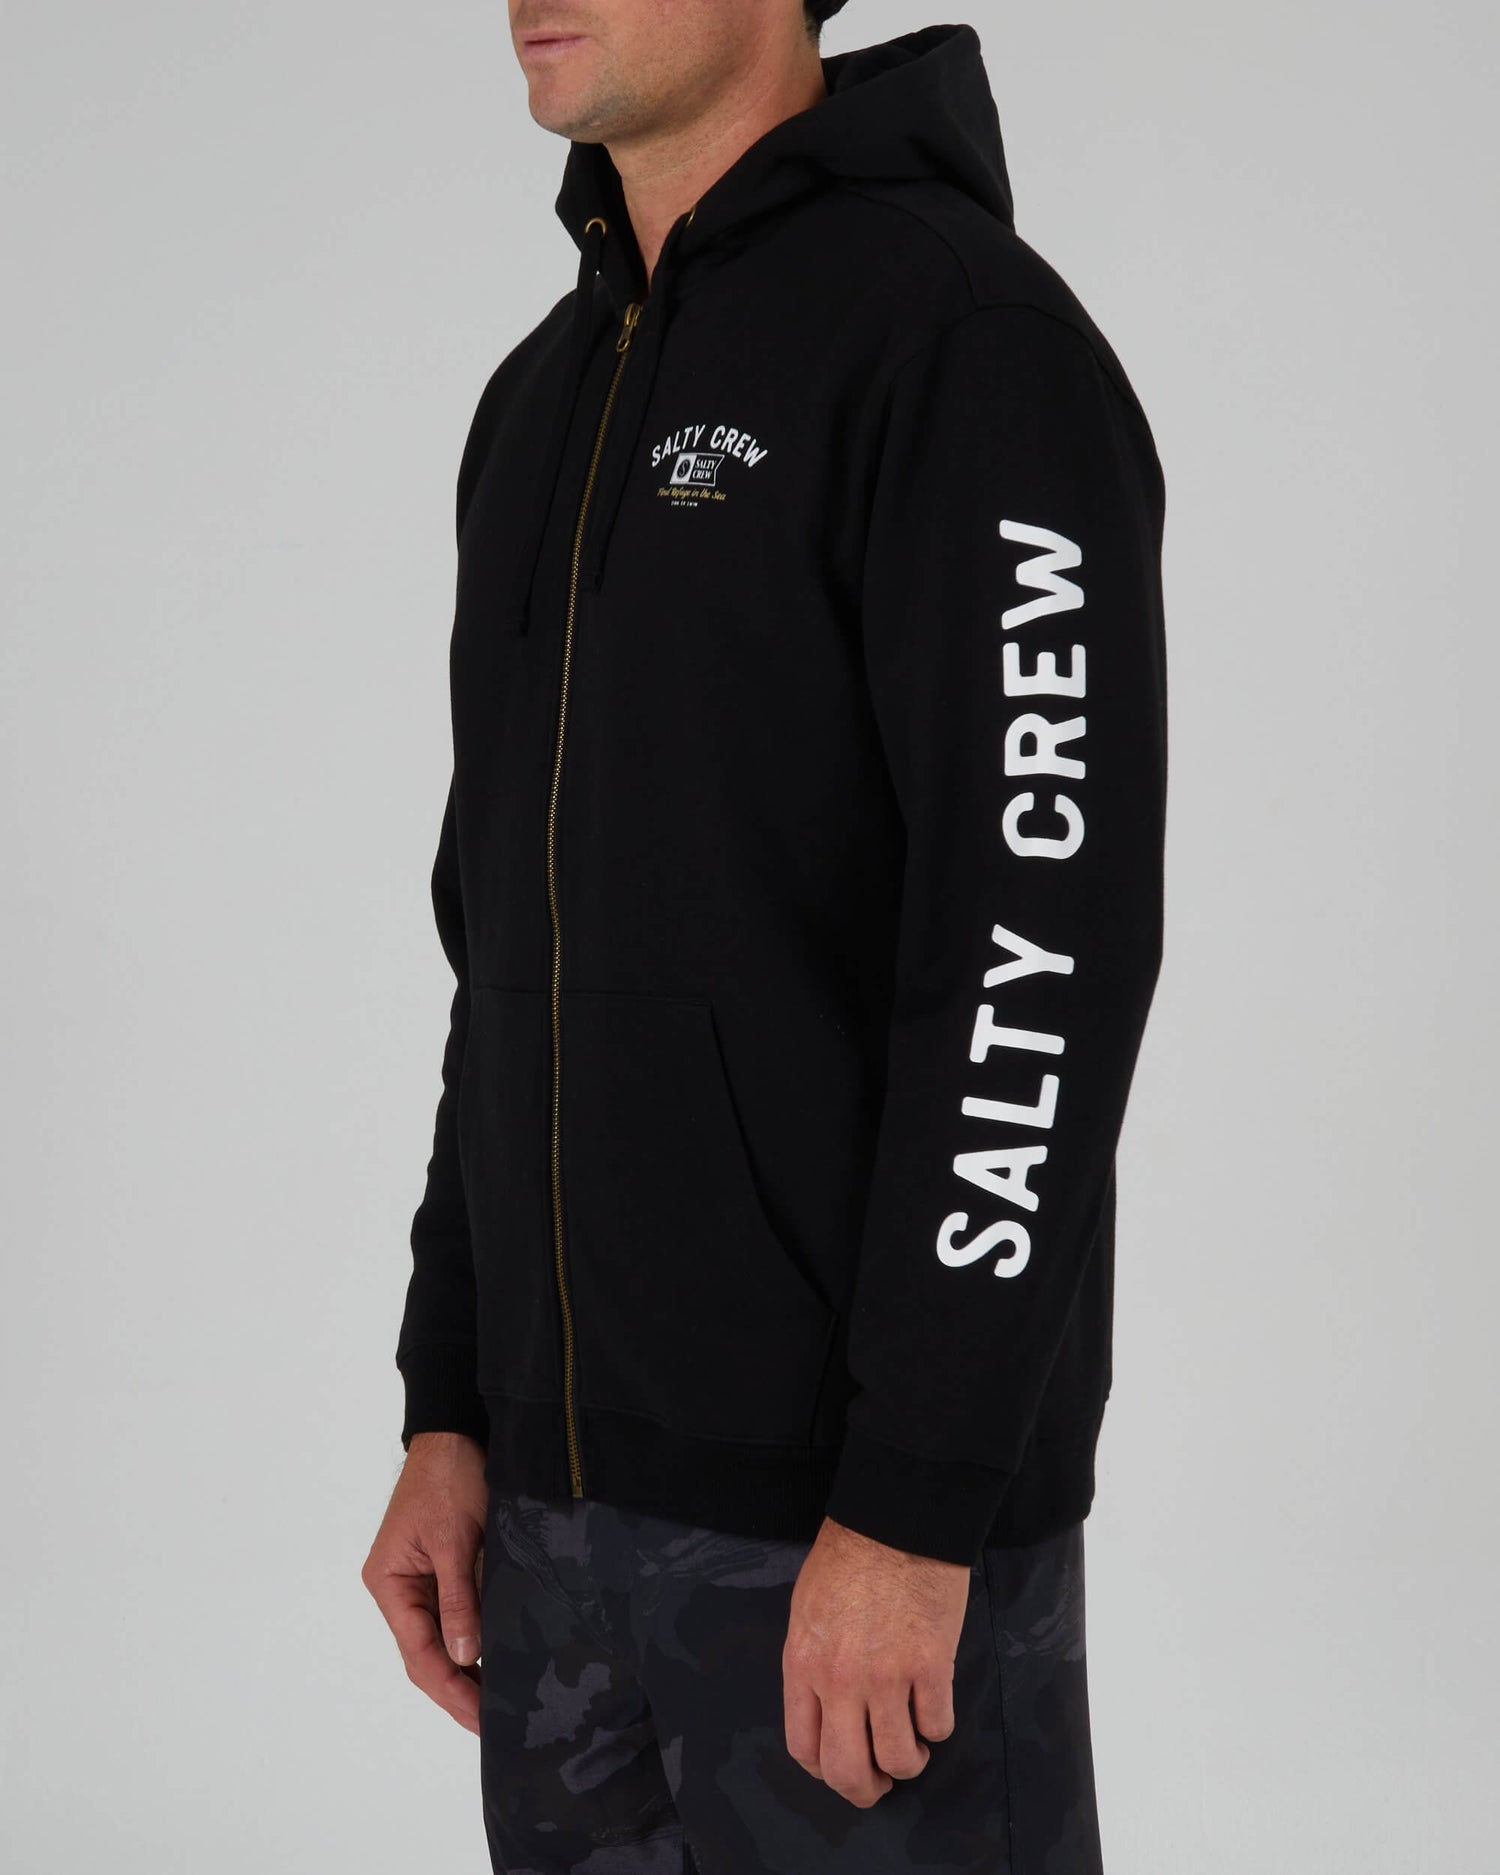 Salty Crew Hommes - Surf Club Zip Fleece - Black